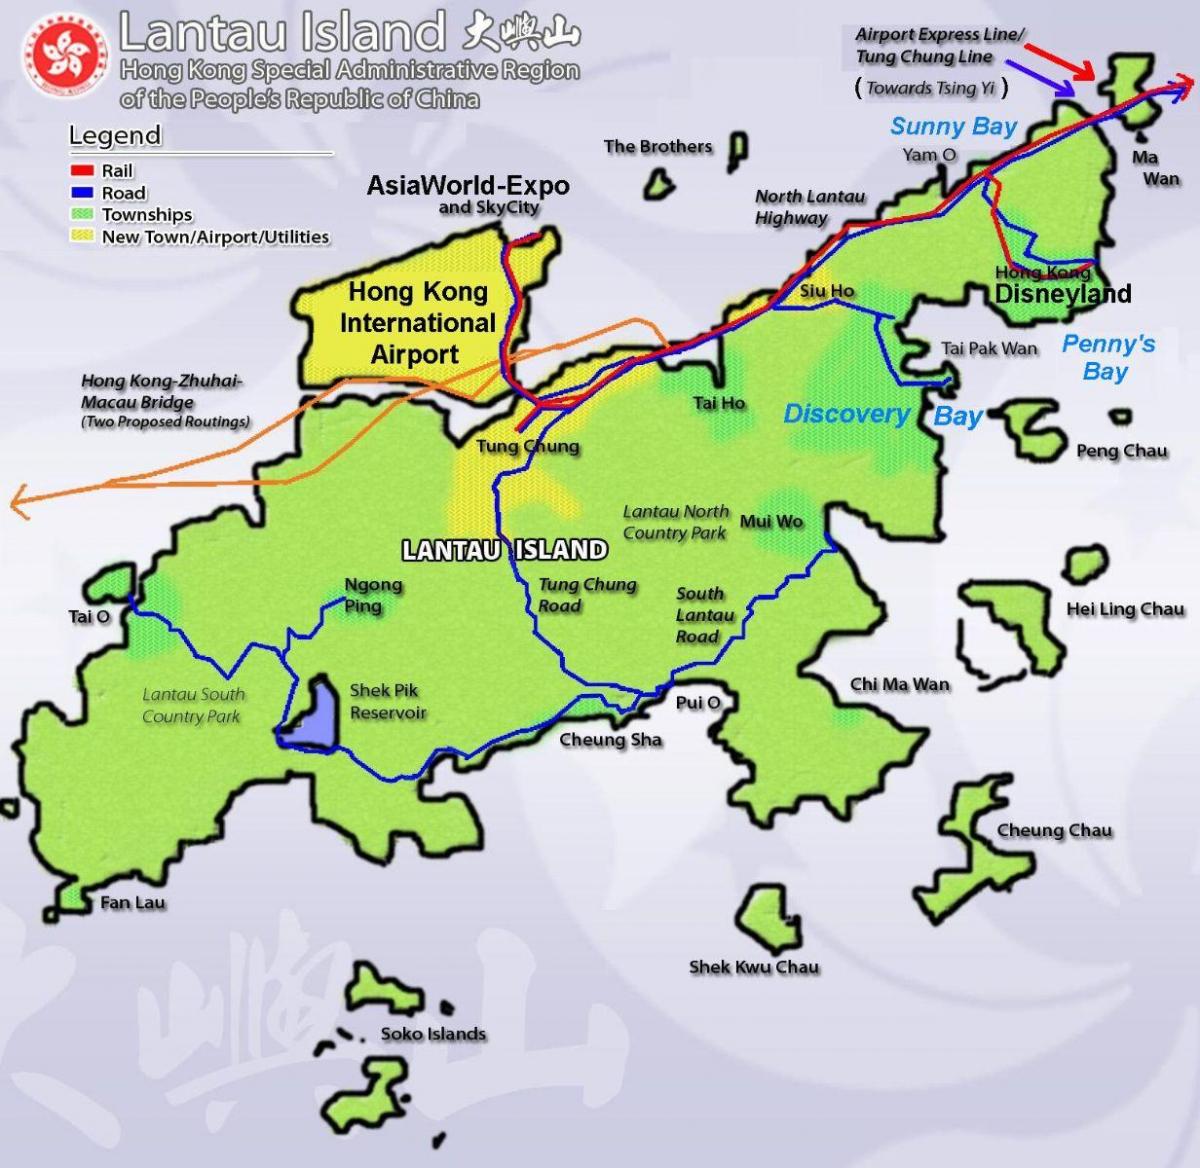 हांगकांग द्वीप के पर्यटन मानचित्र